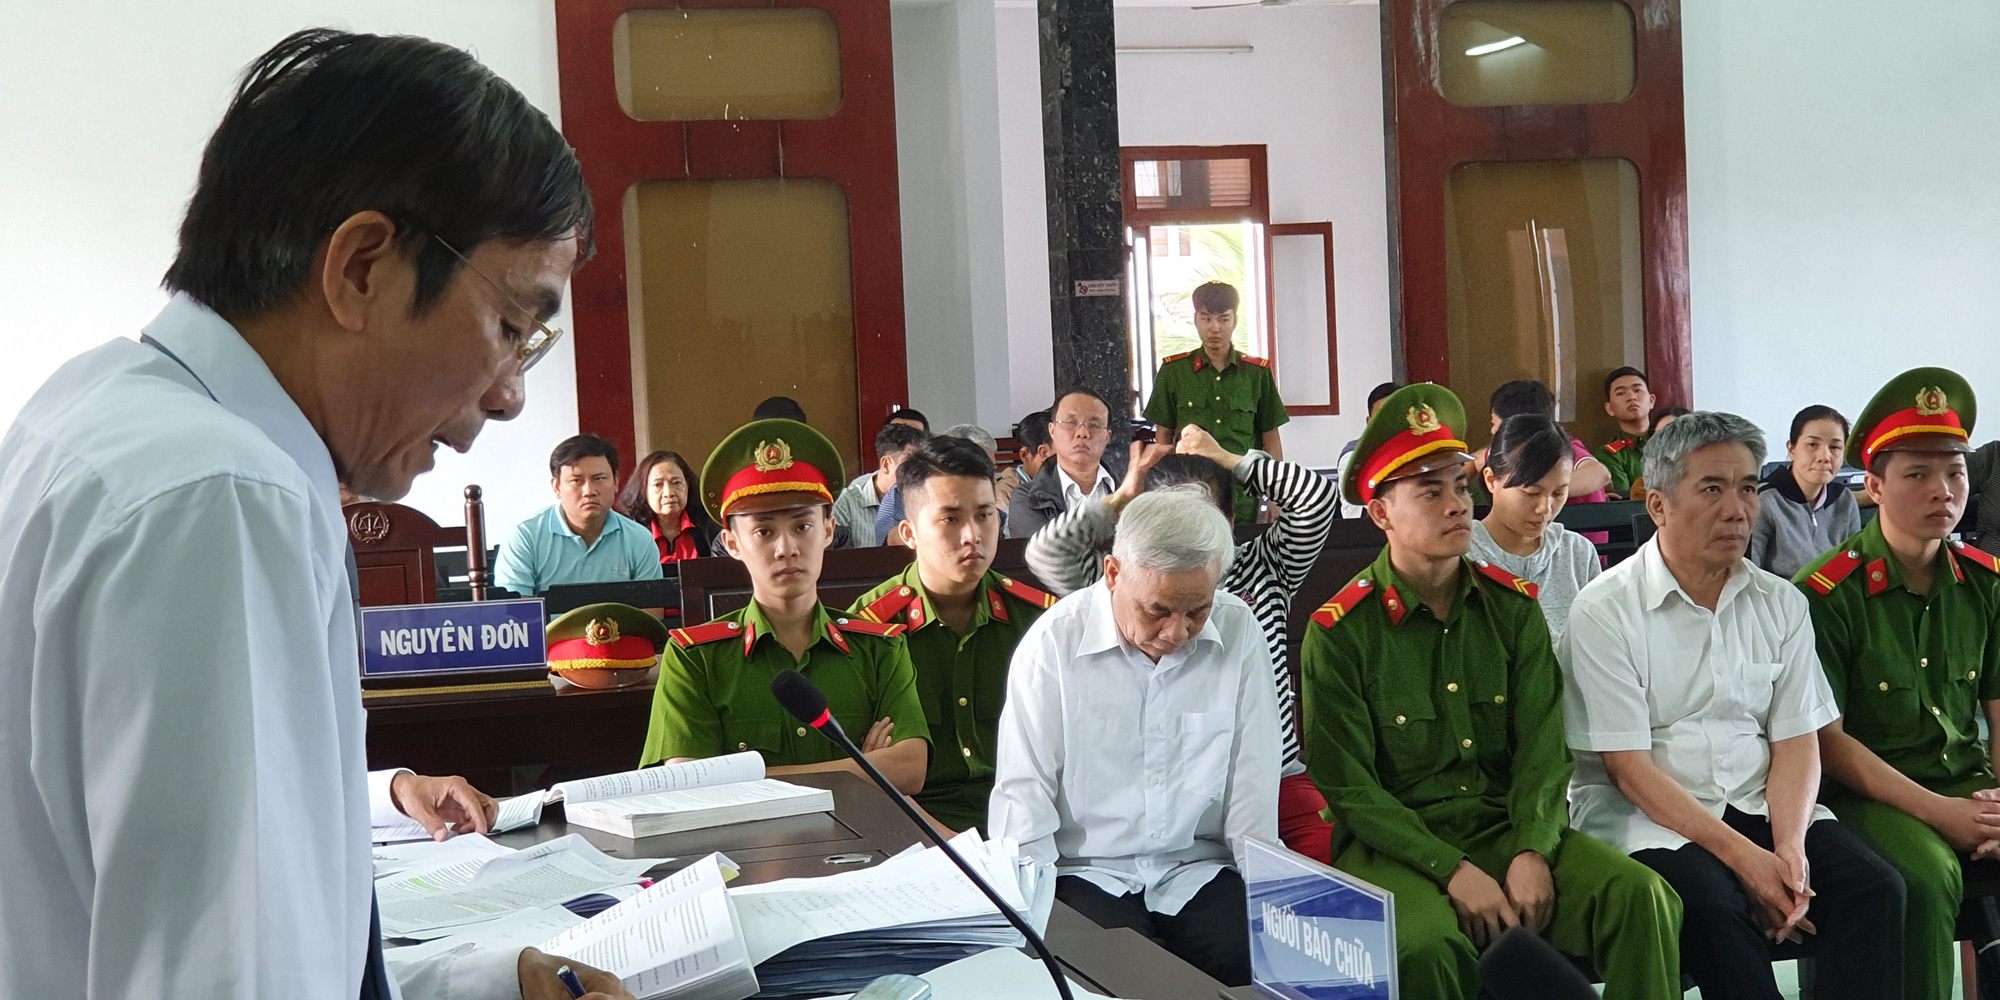 Cựu chánh án Phú Yên đối diện mức án 15 năm 6 tháng - 16 năm tù về tội tham ô - Ảnh 3.